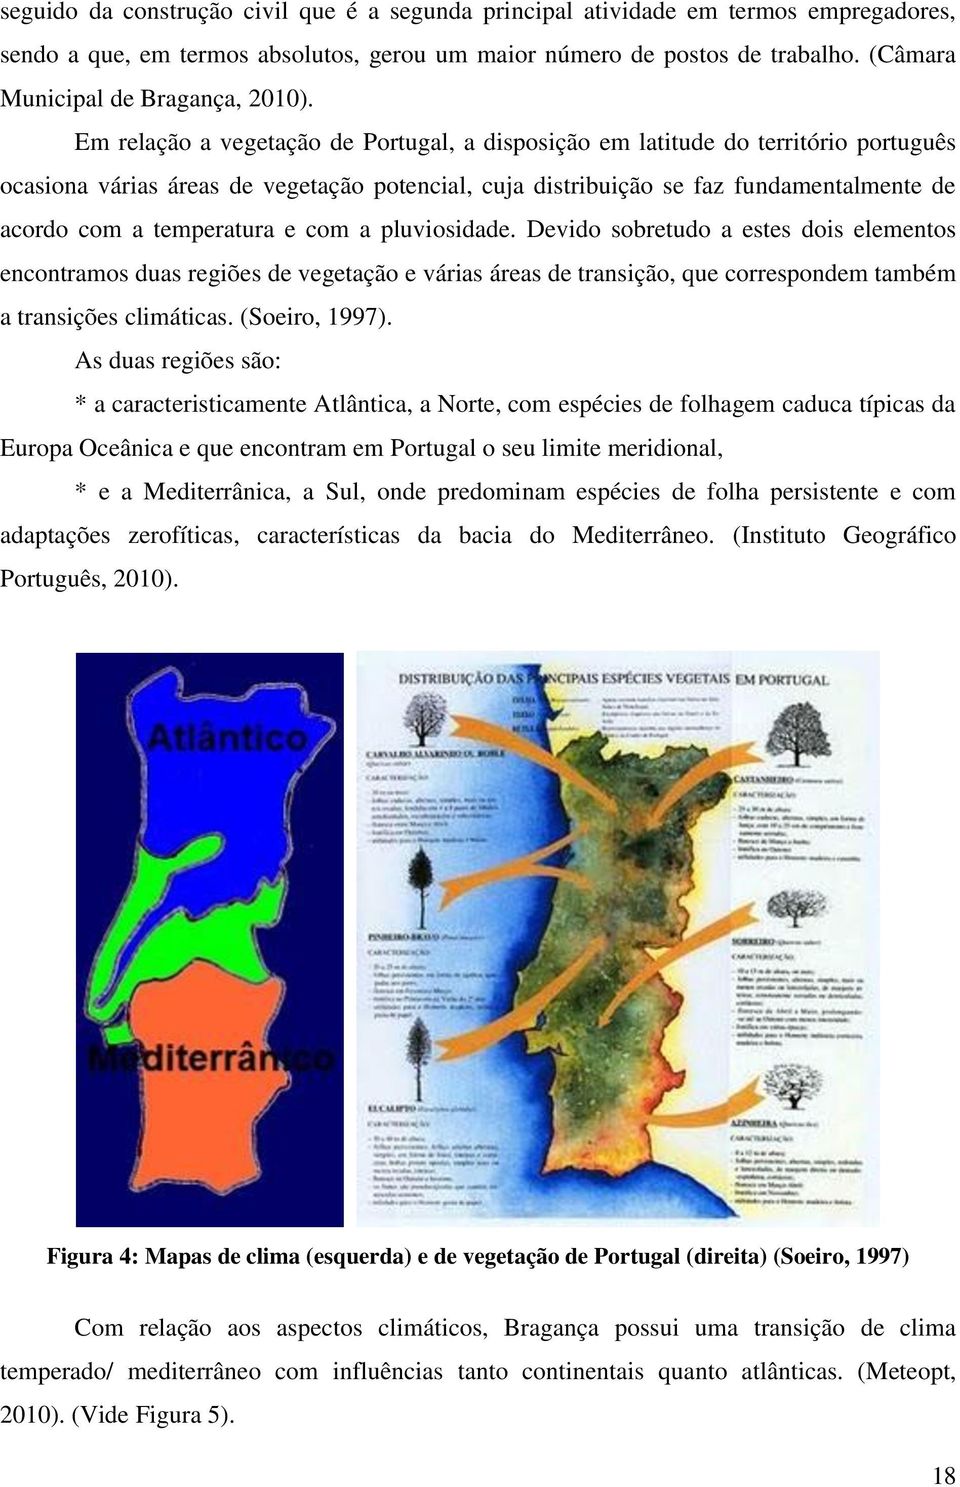 Em relação a vegetação de Portugal, a disposição em latitude do território português ocasiona várias áreas de vegetação potencial, cuja distribuição se faz fundamentalmente de acordo com a